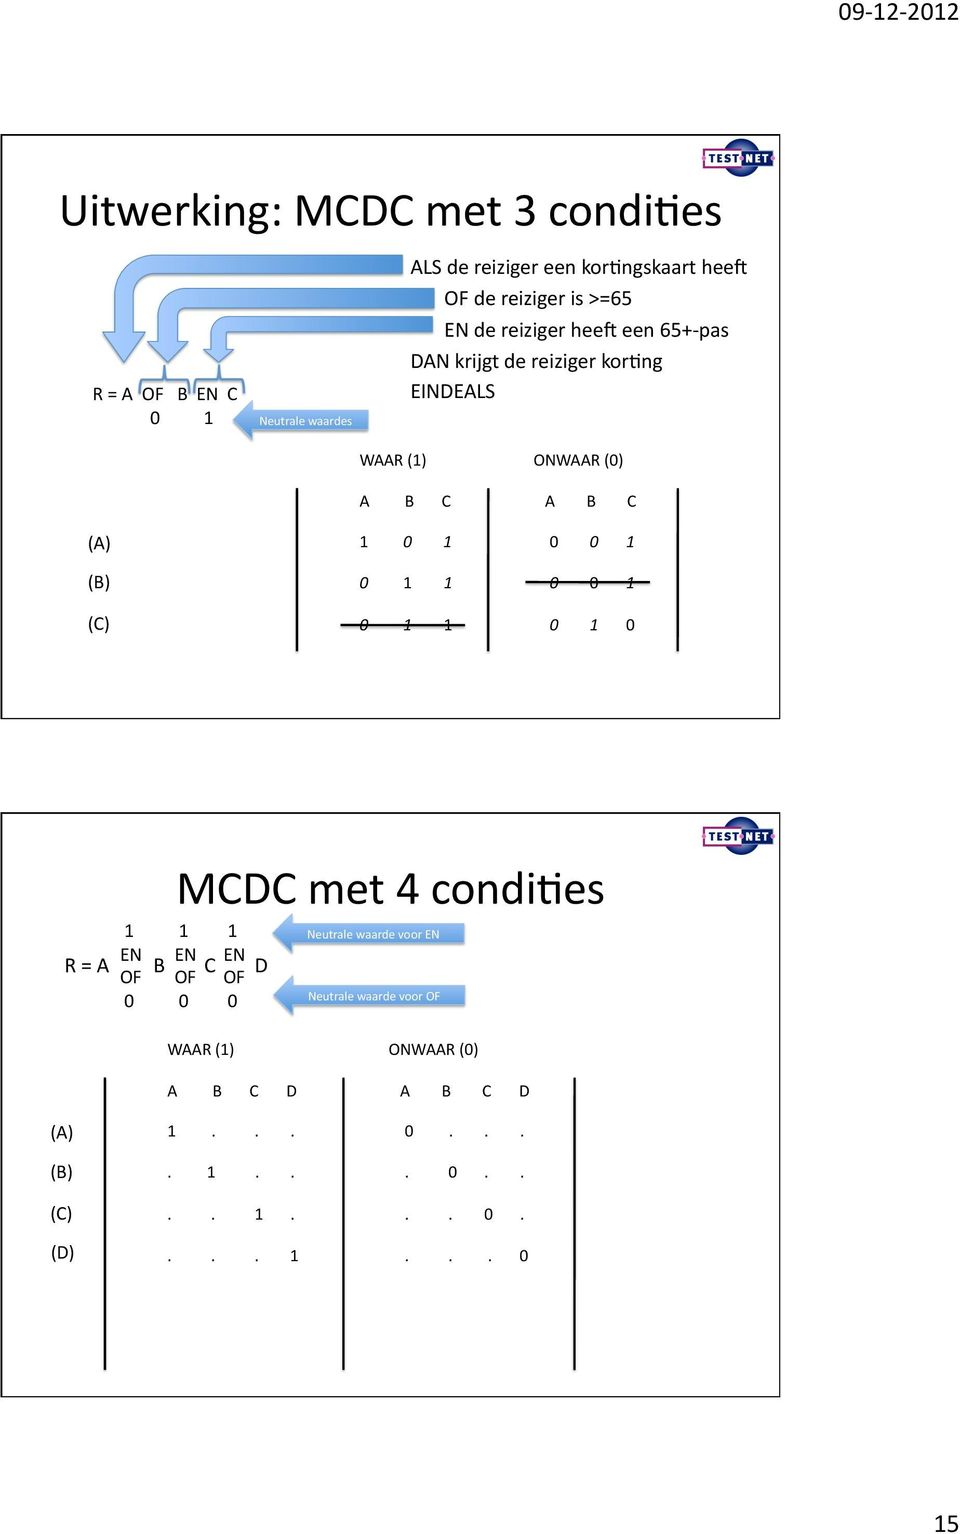 1 0 1 1 0 1 1 A B C 0 0 1 0 0 1 0 1 0 MCDC met 4 condifes 1 1 1 Neutrale waarde voor EN EN EN EN R = A B